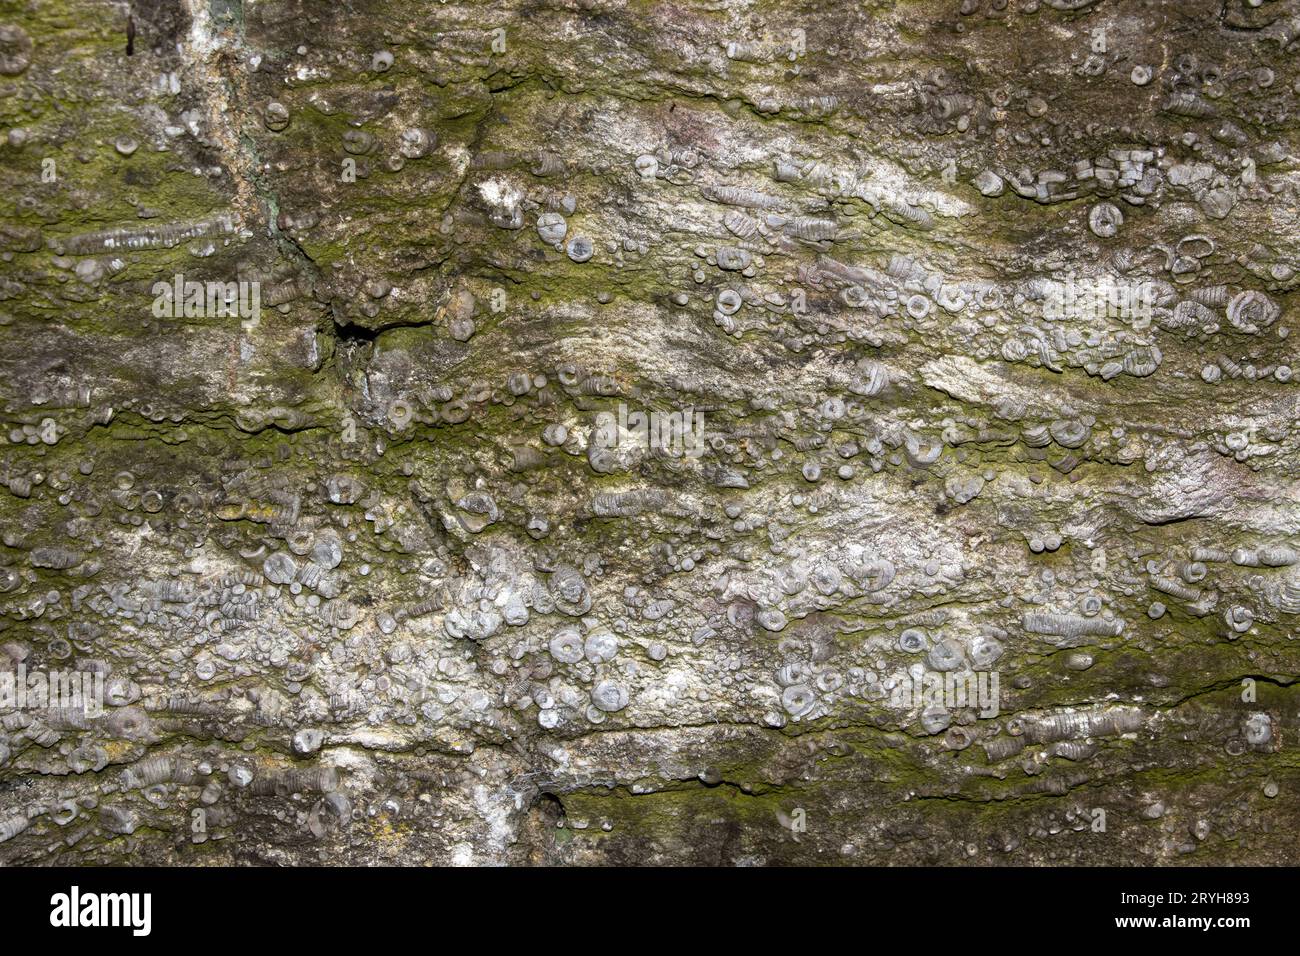 Lits de calcaire déposés il y a 340 millions d'années dans les mers tropicales peu profondes juste au sud de l'équateur. Les roches sont pleines de fragments de tige crinoïde. Banque D'Images